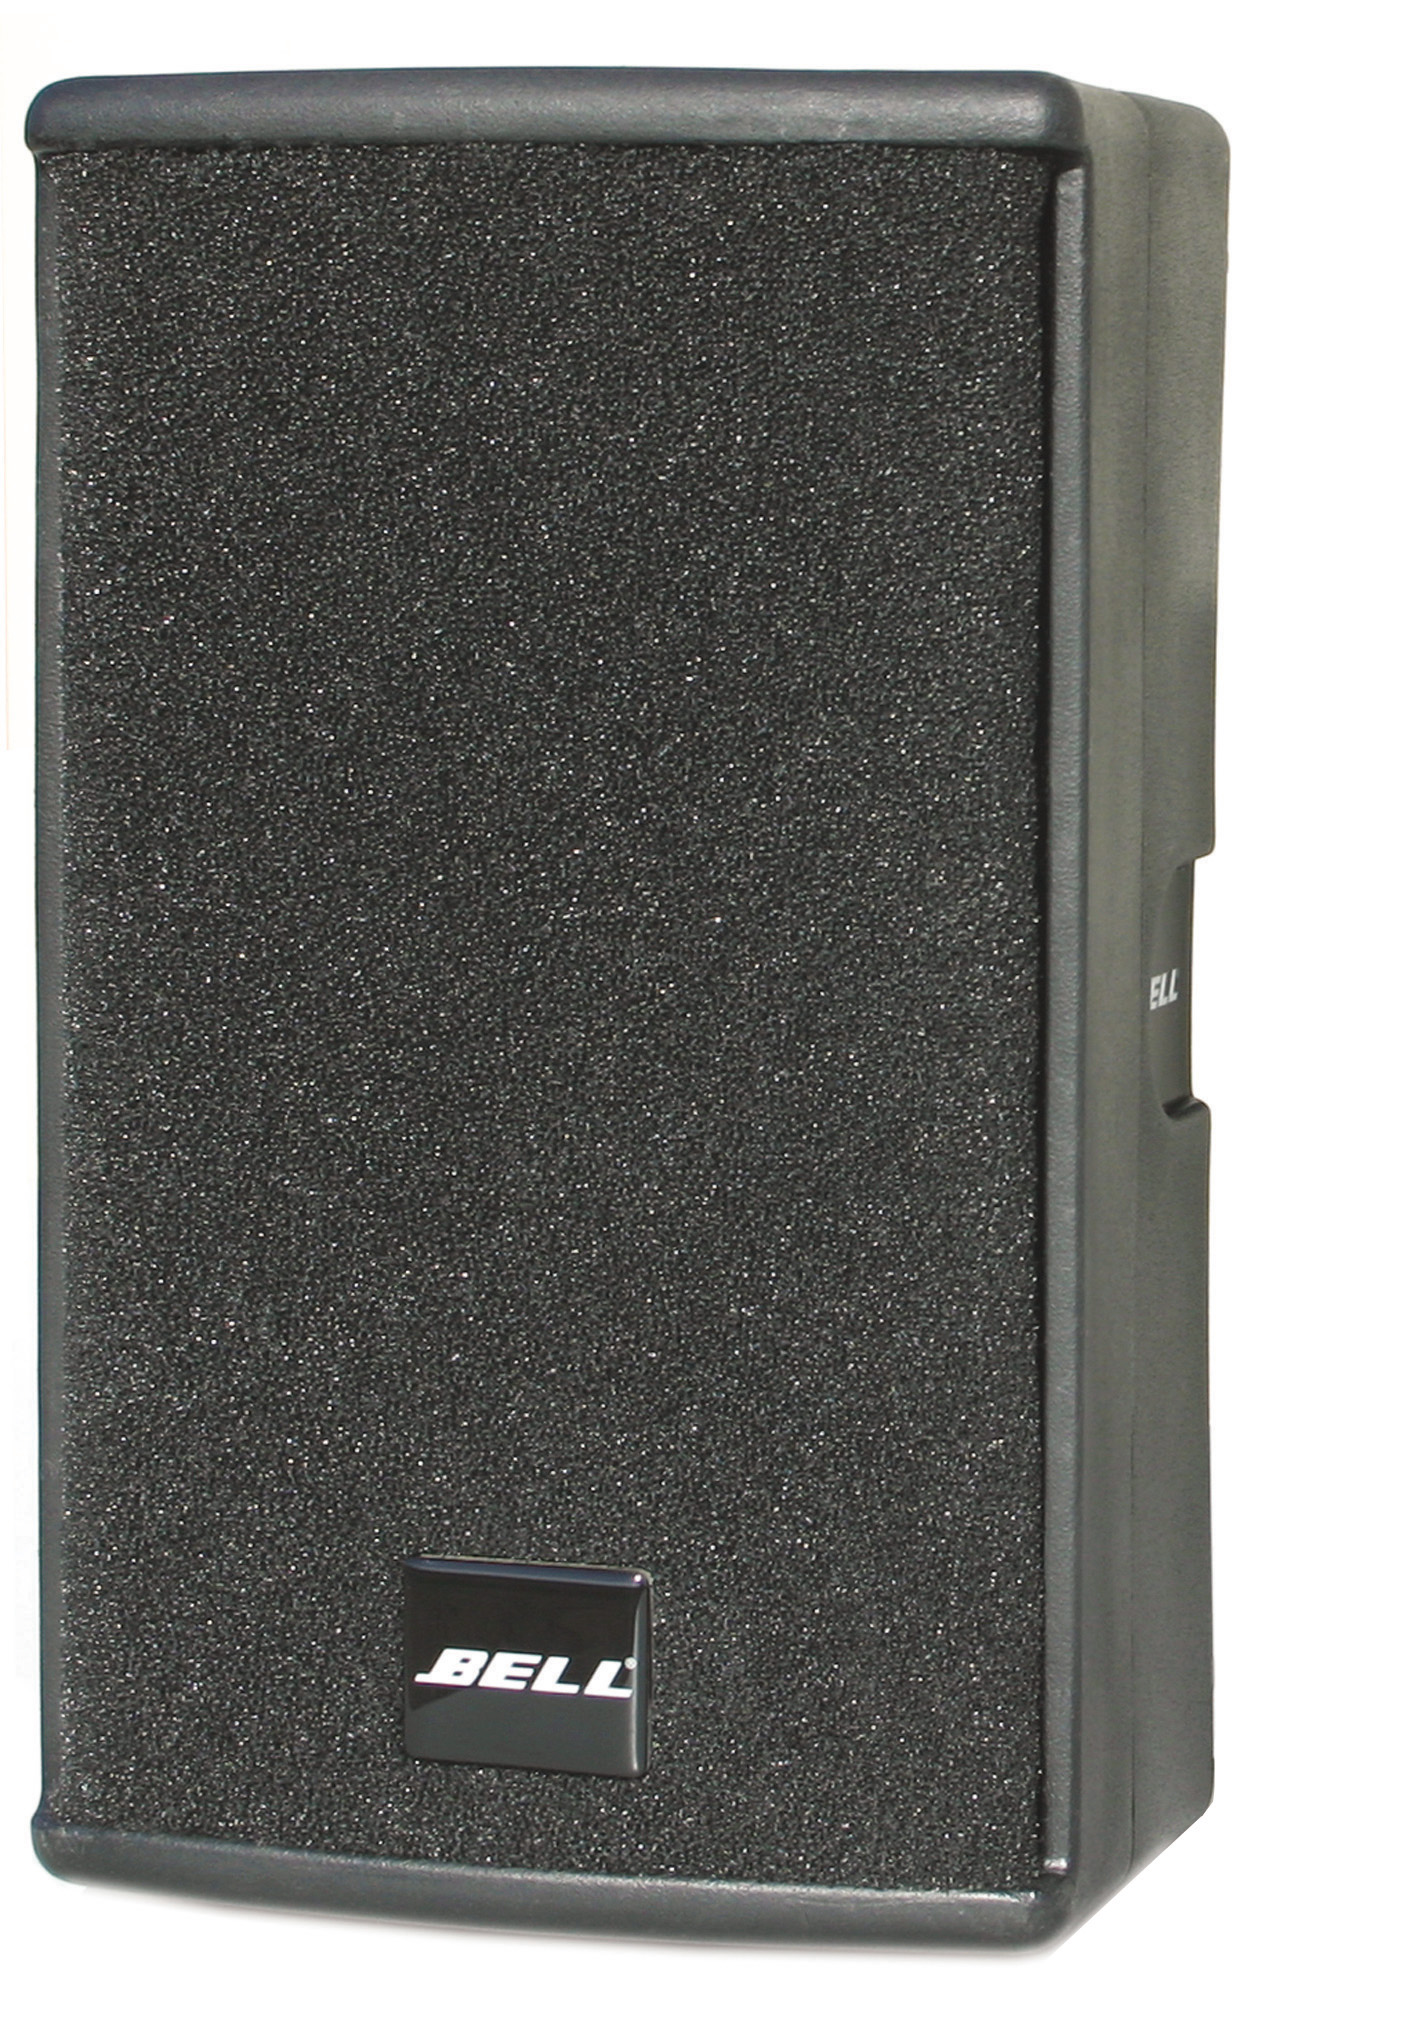 德國贝尔BELL M12pro專業音響12寸音箱全頻音箱舞台音響酒店音響會議音響娛樂音響酒吧音響高端音箱产品图片